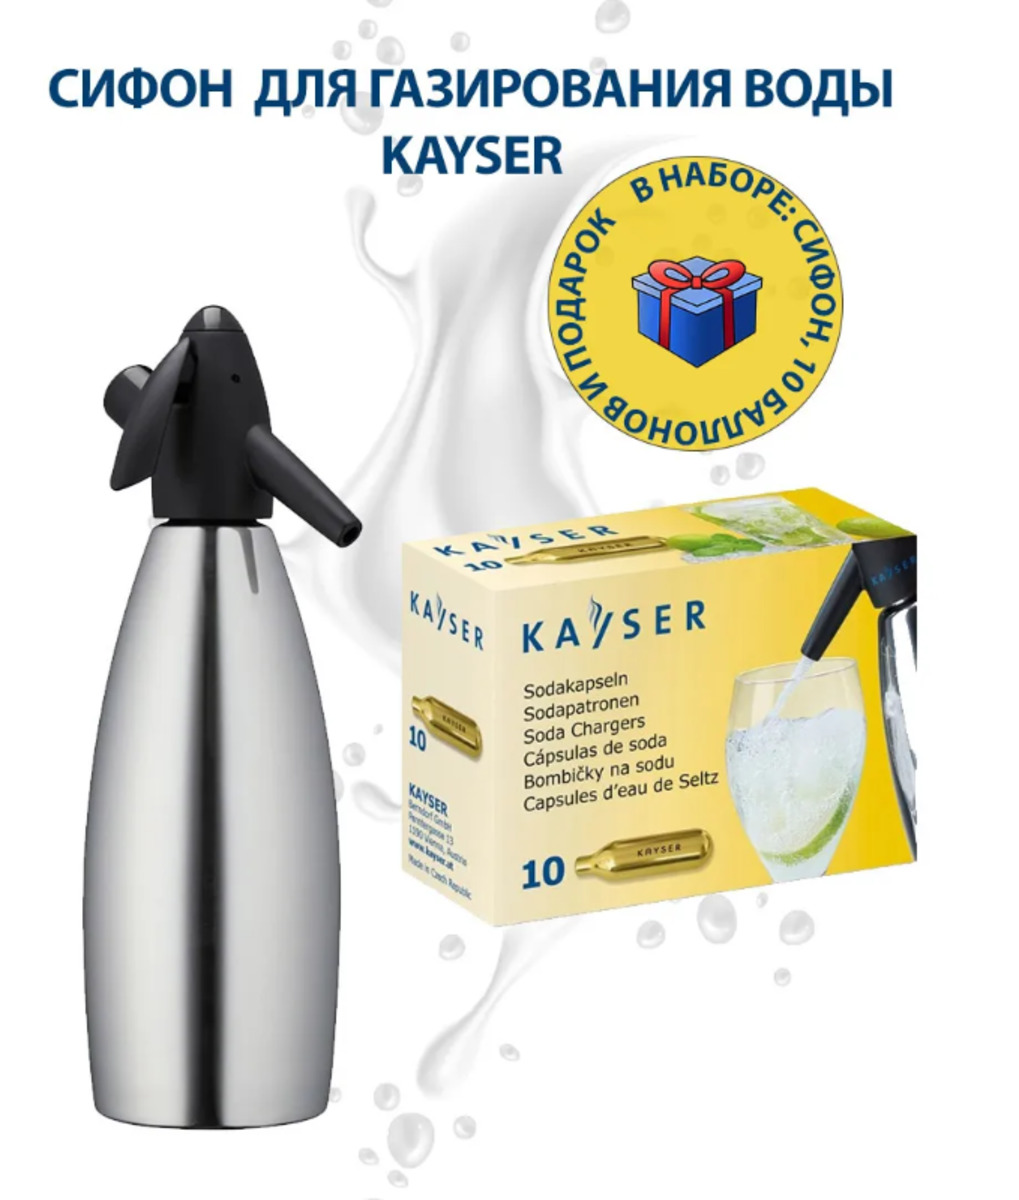 Сифон для газирования воды KAYSER 1л. + 10 баллончиков